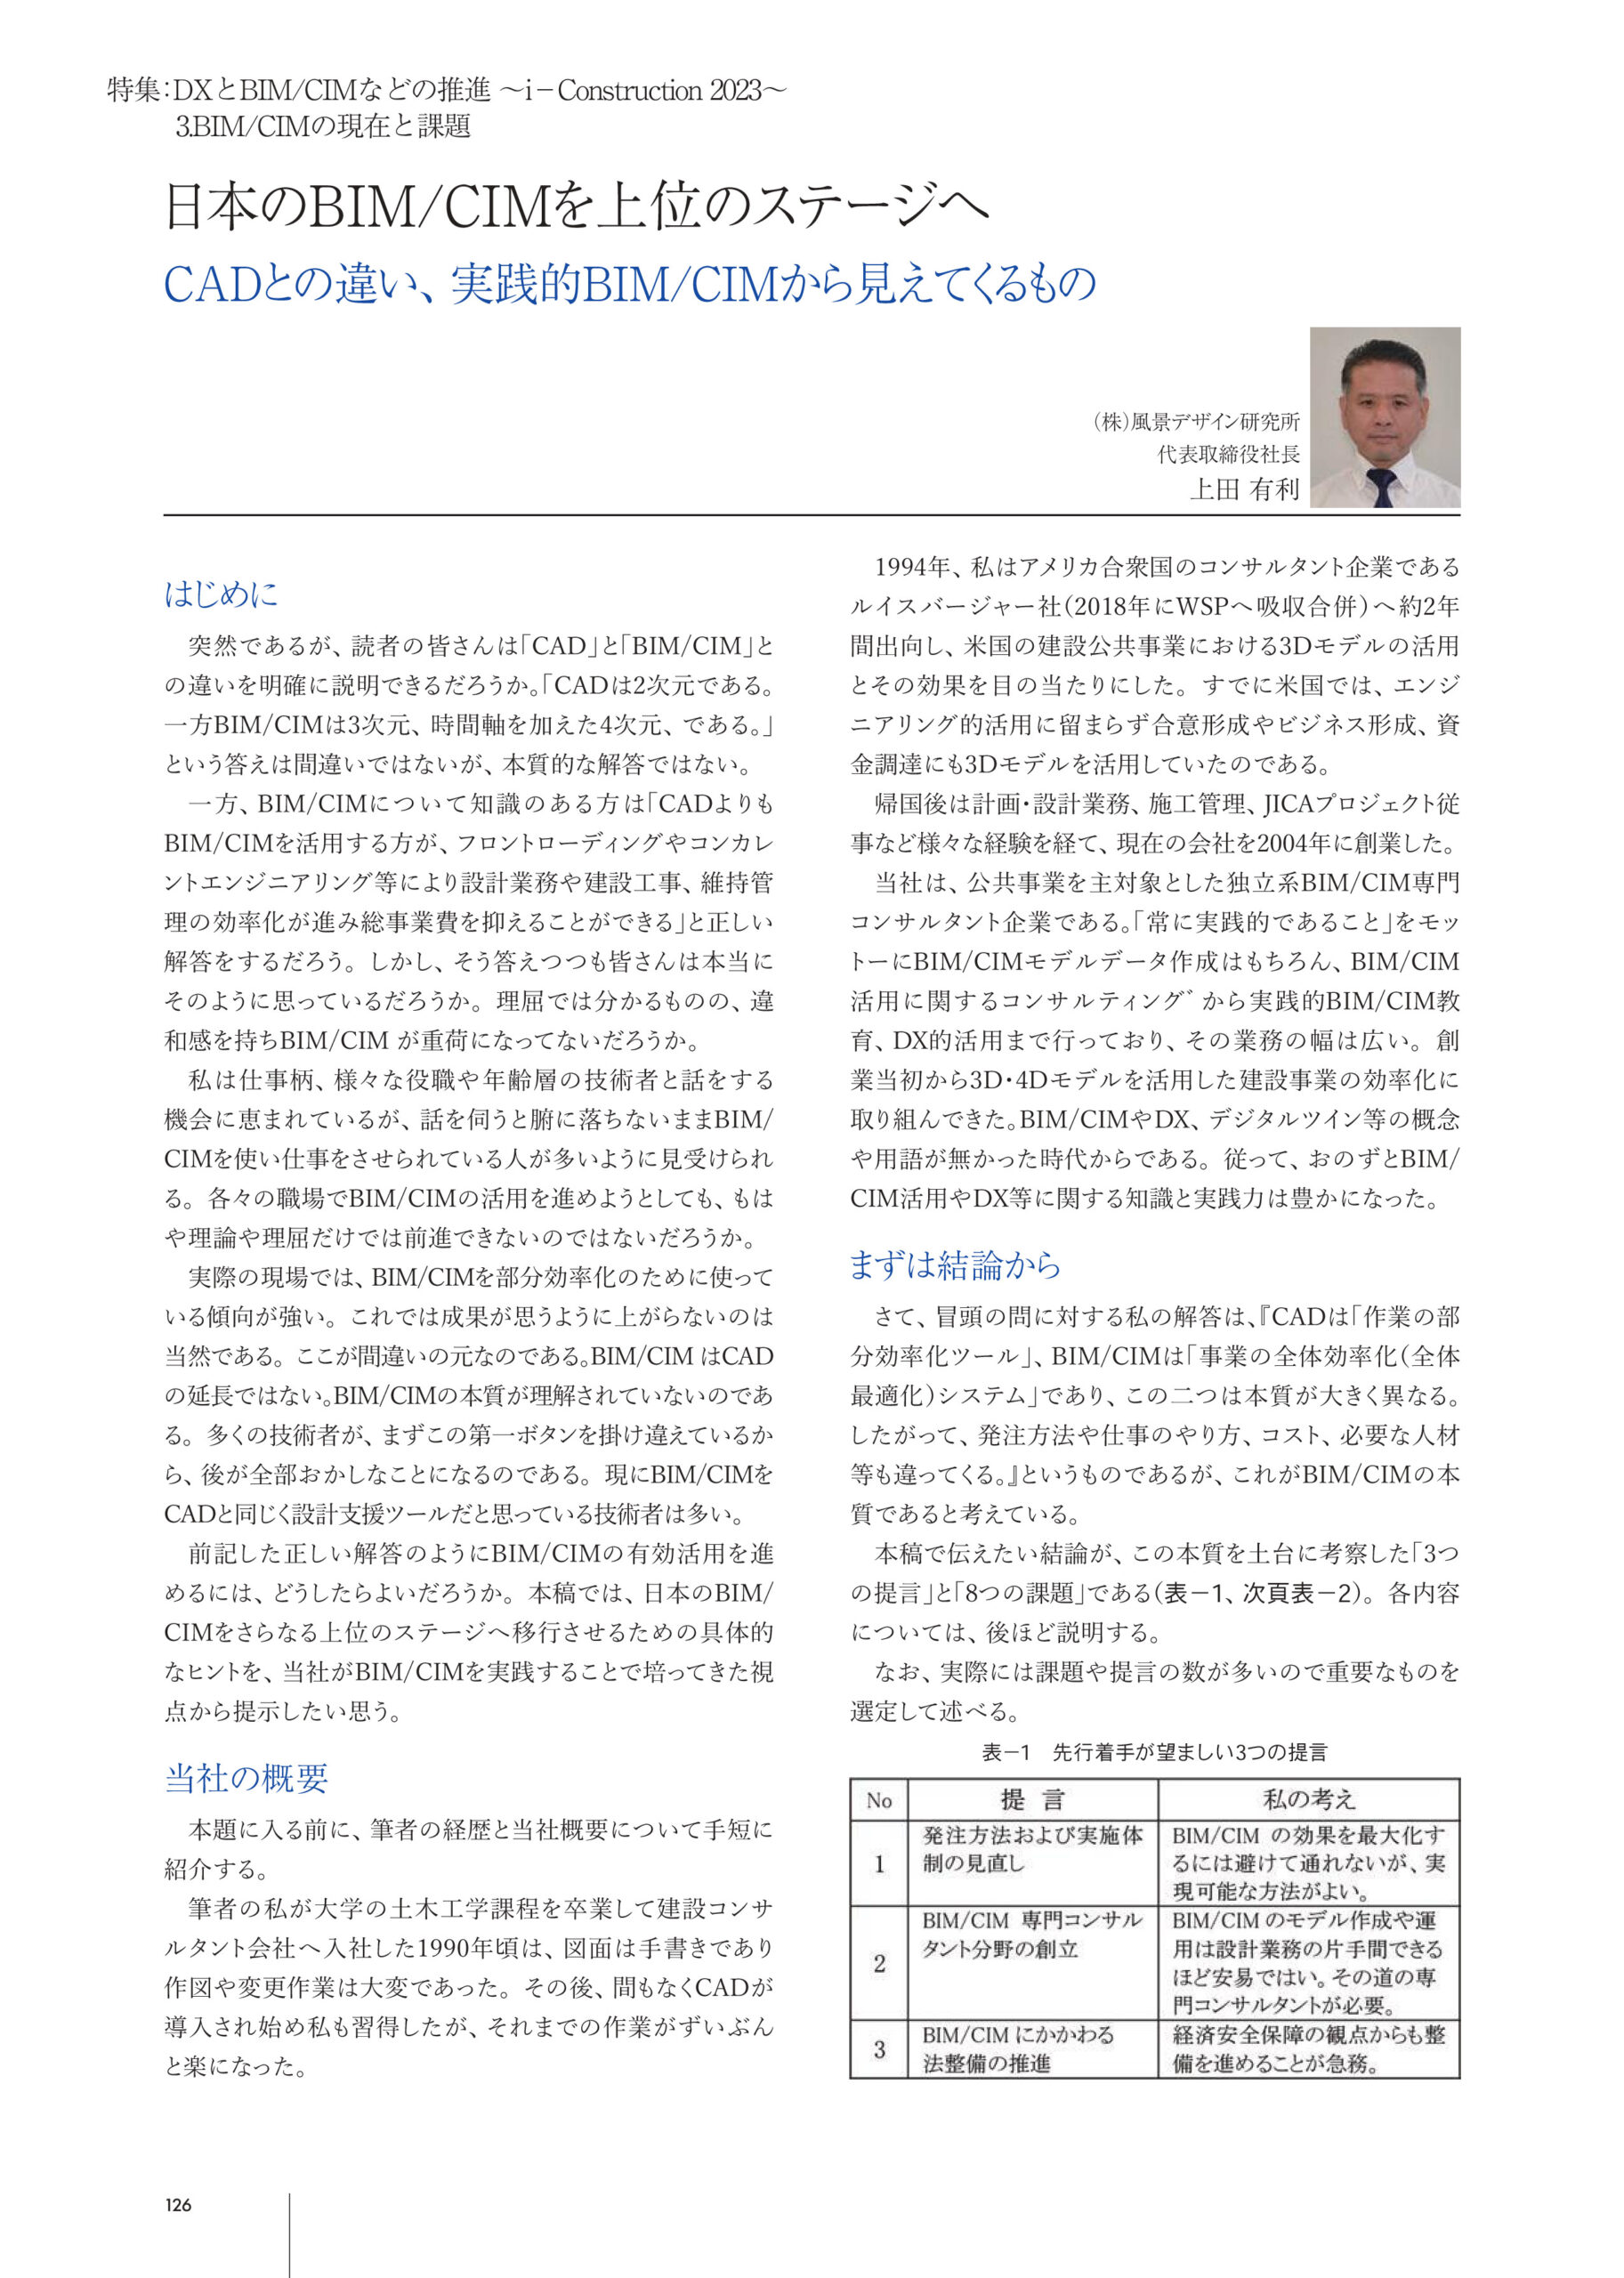 総合土木技術誌『土木施工』2023年1月号 上田有利 寄稿記事